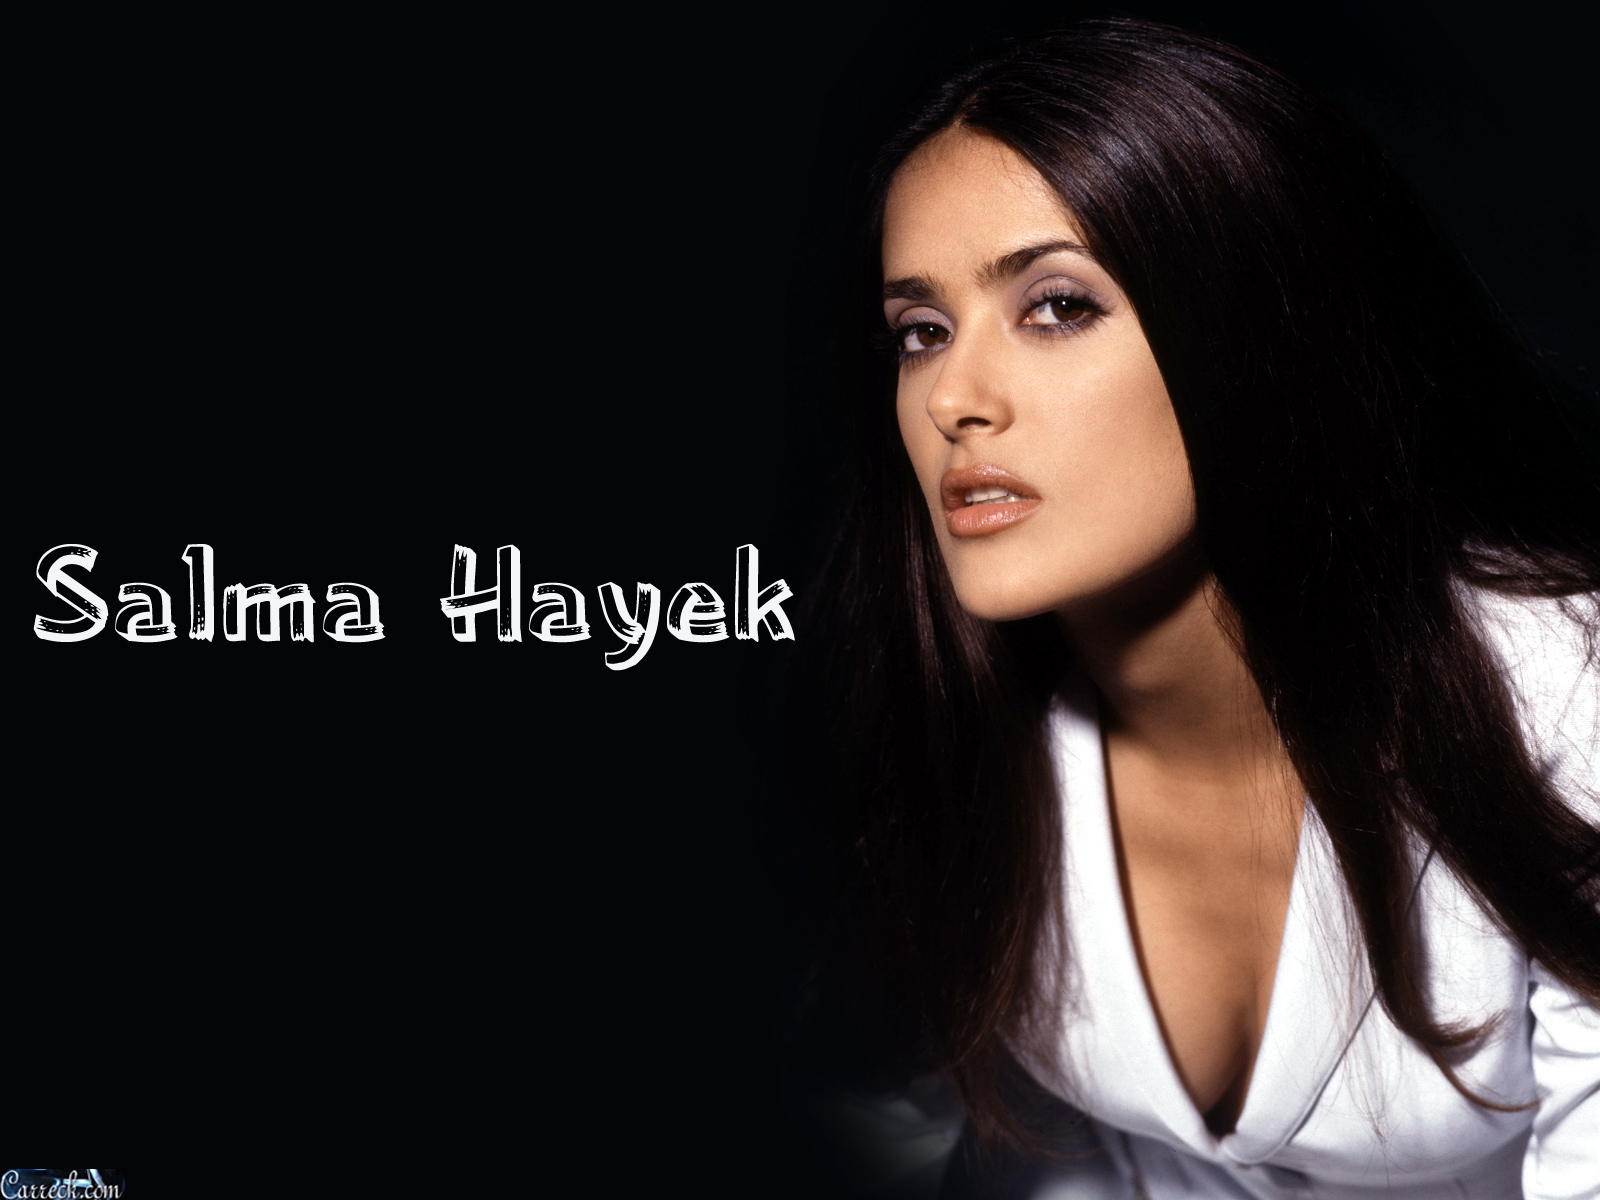 Salma Hayek - Images Actress